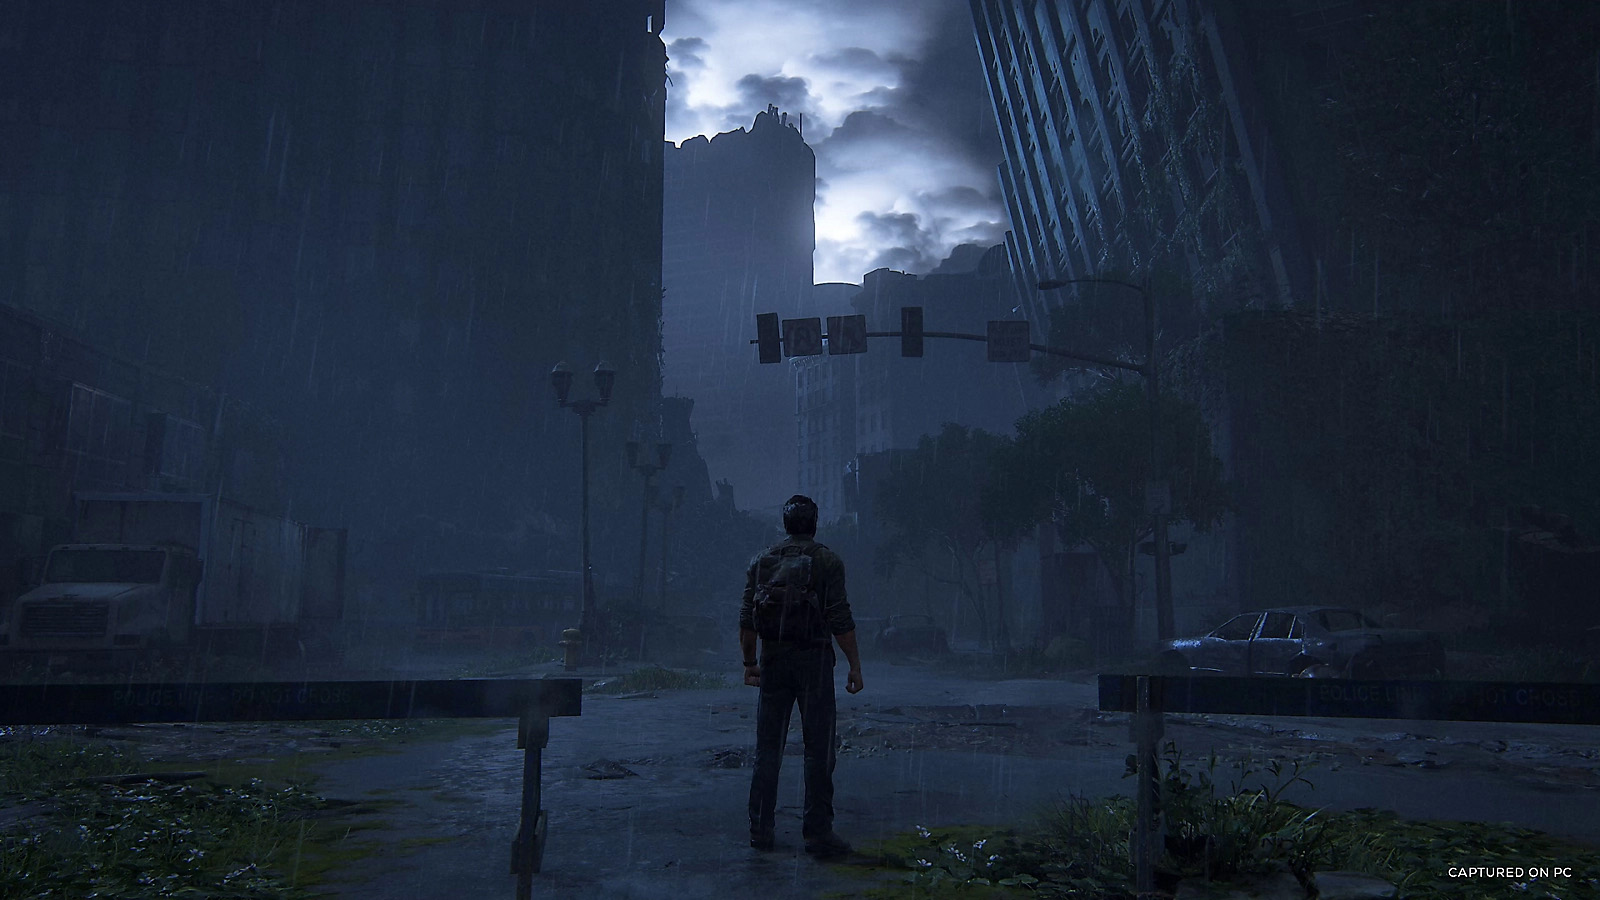 Titelbild zum Test zu The Last of Us Part 1, es ist eine nächtliche Szene in einer verlassenen Großstadt zu sehen.